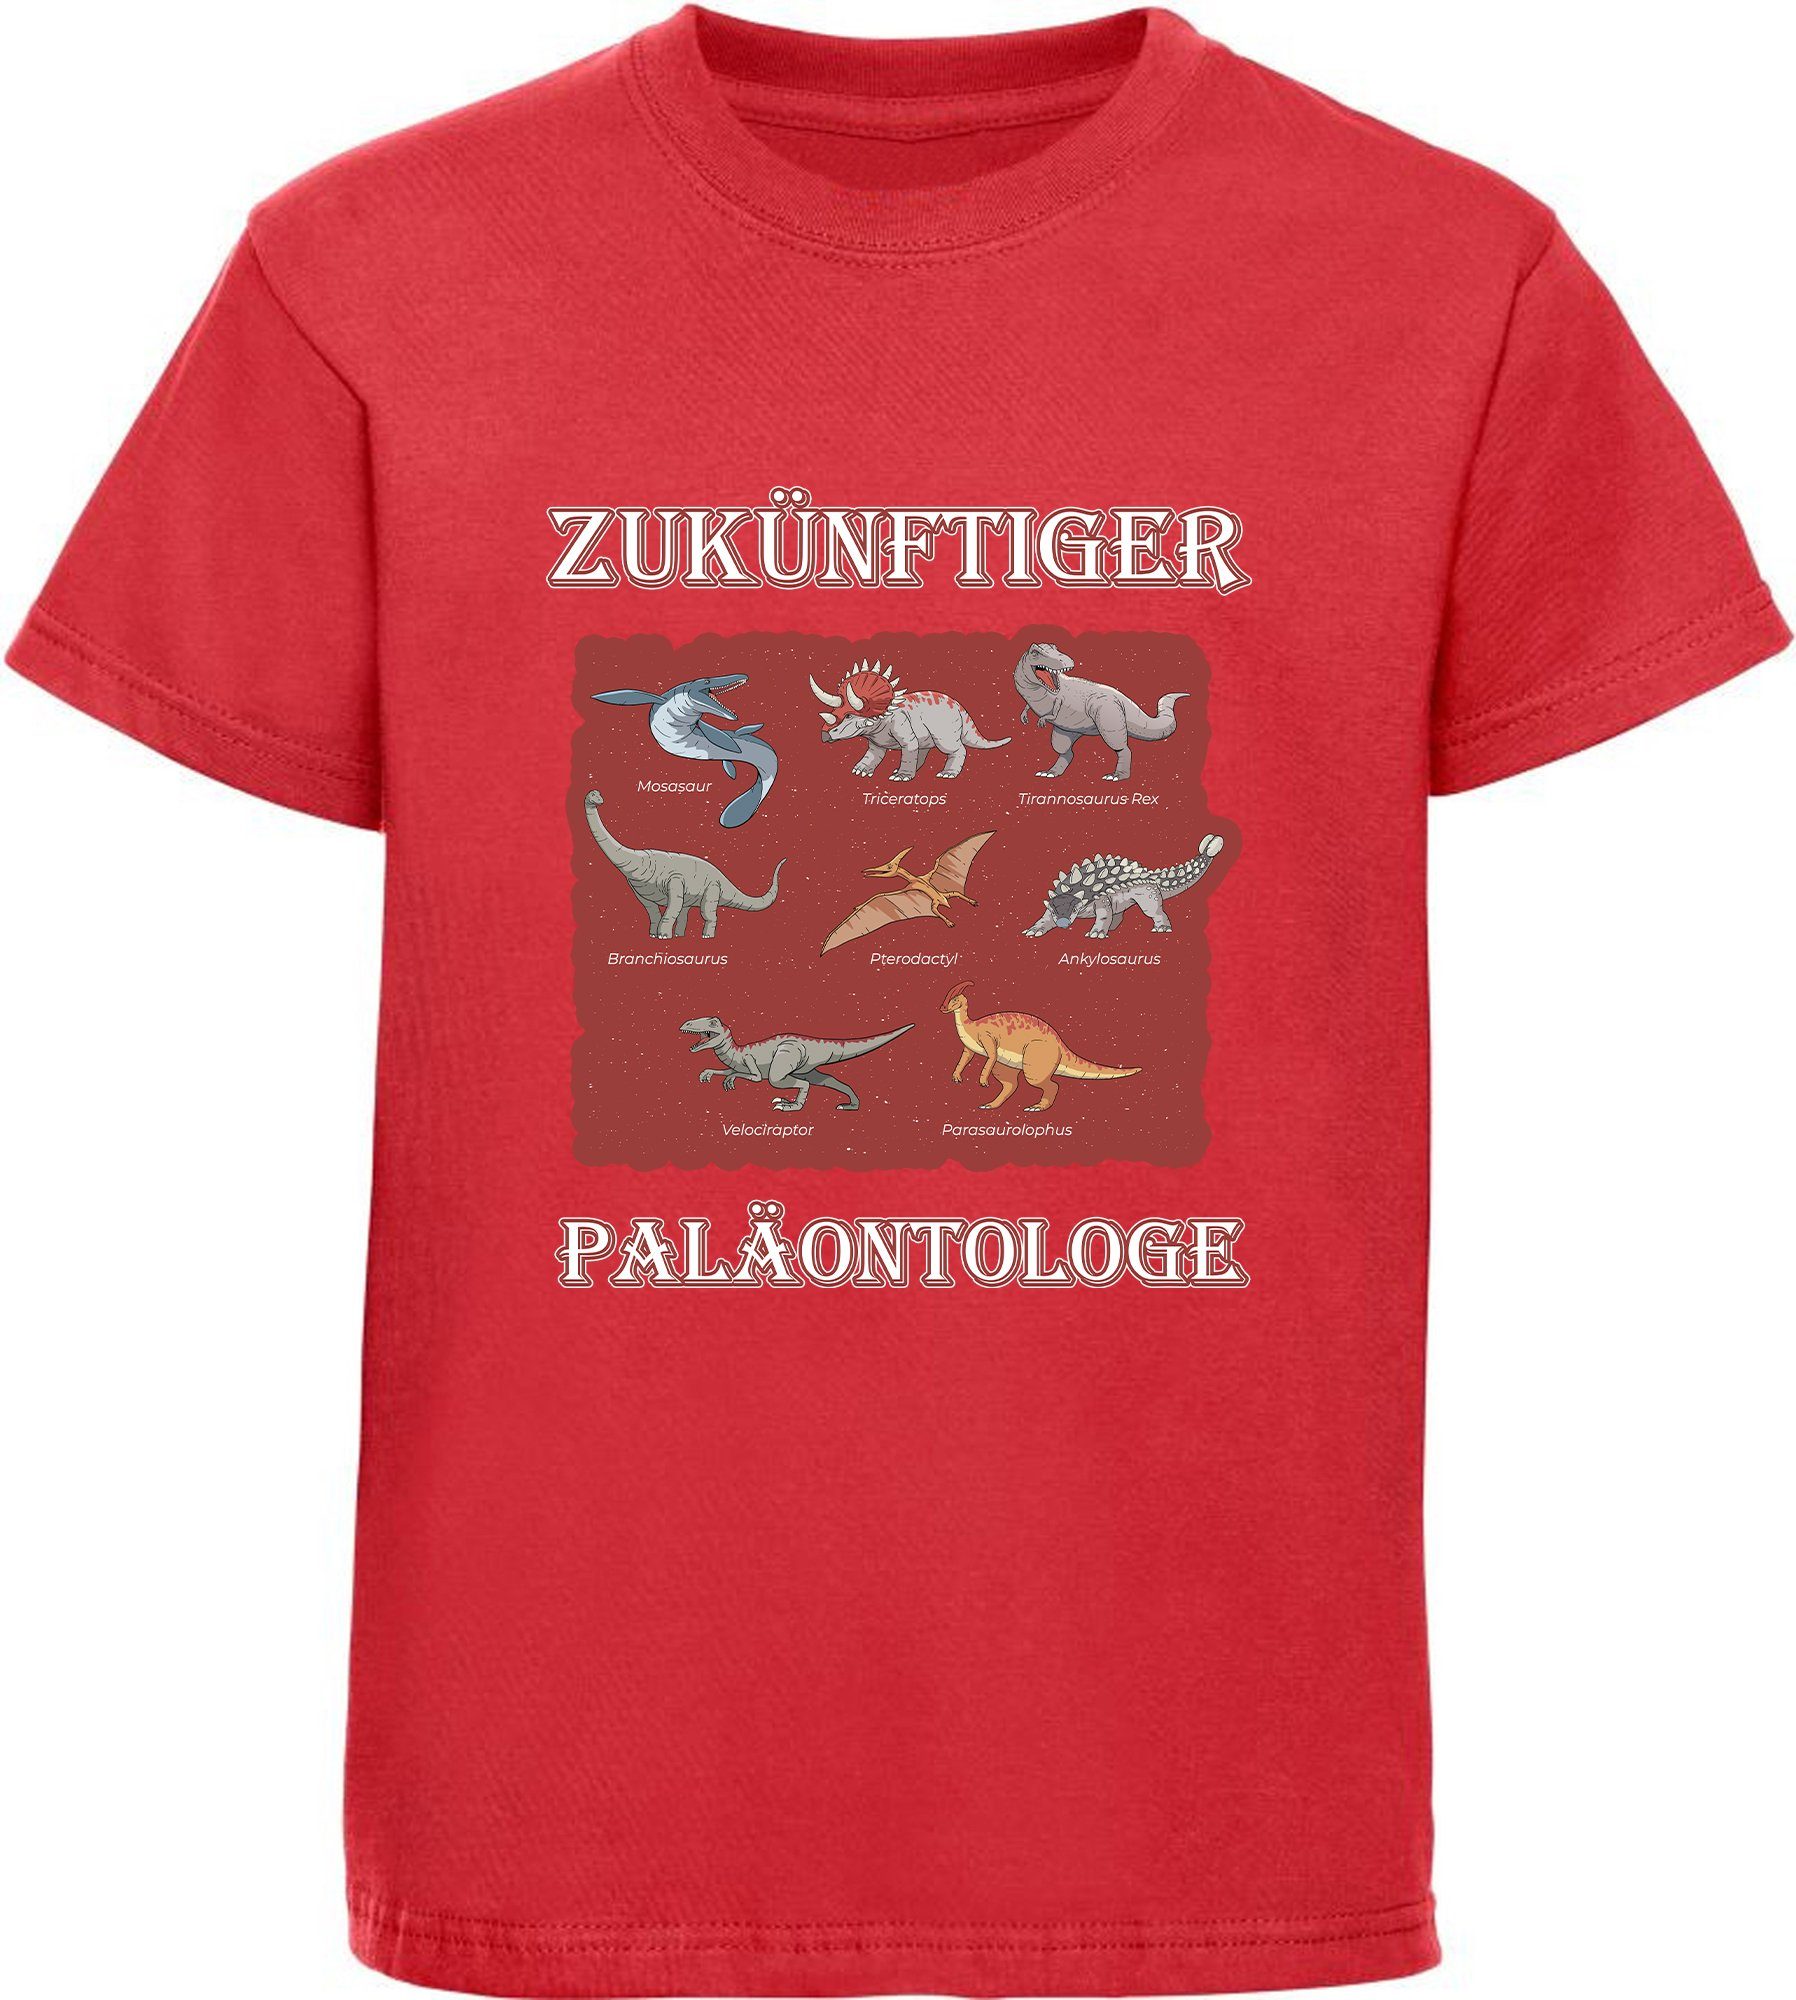 MyDesign24 T-Shirt bedrucktes Kinder i50 100% mit T-Shirt rot Baumwolle Dino Aufdruck, mit Paläontologe vielen Dinosauriern